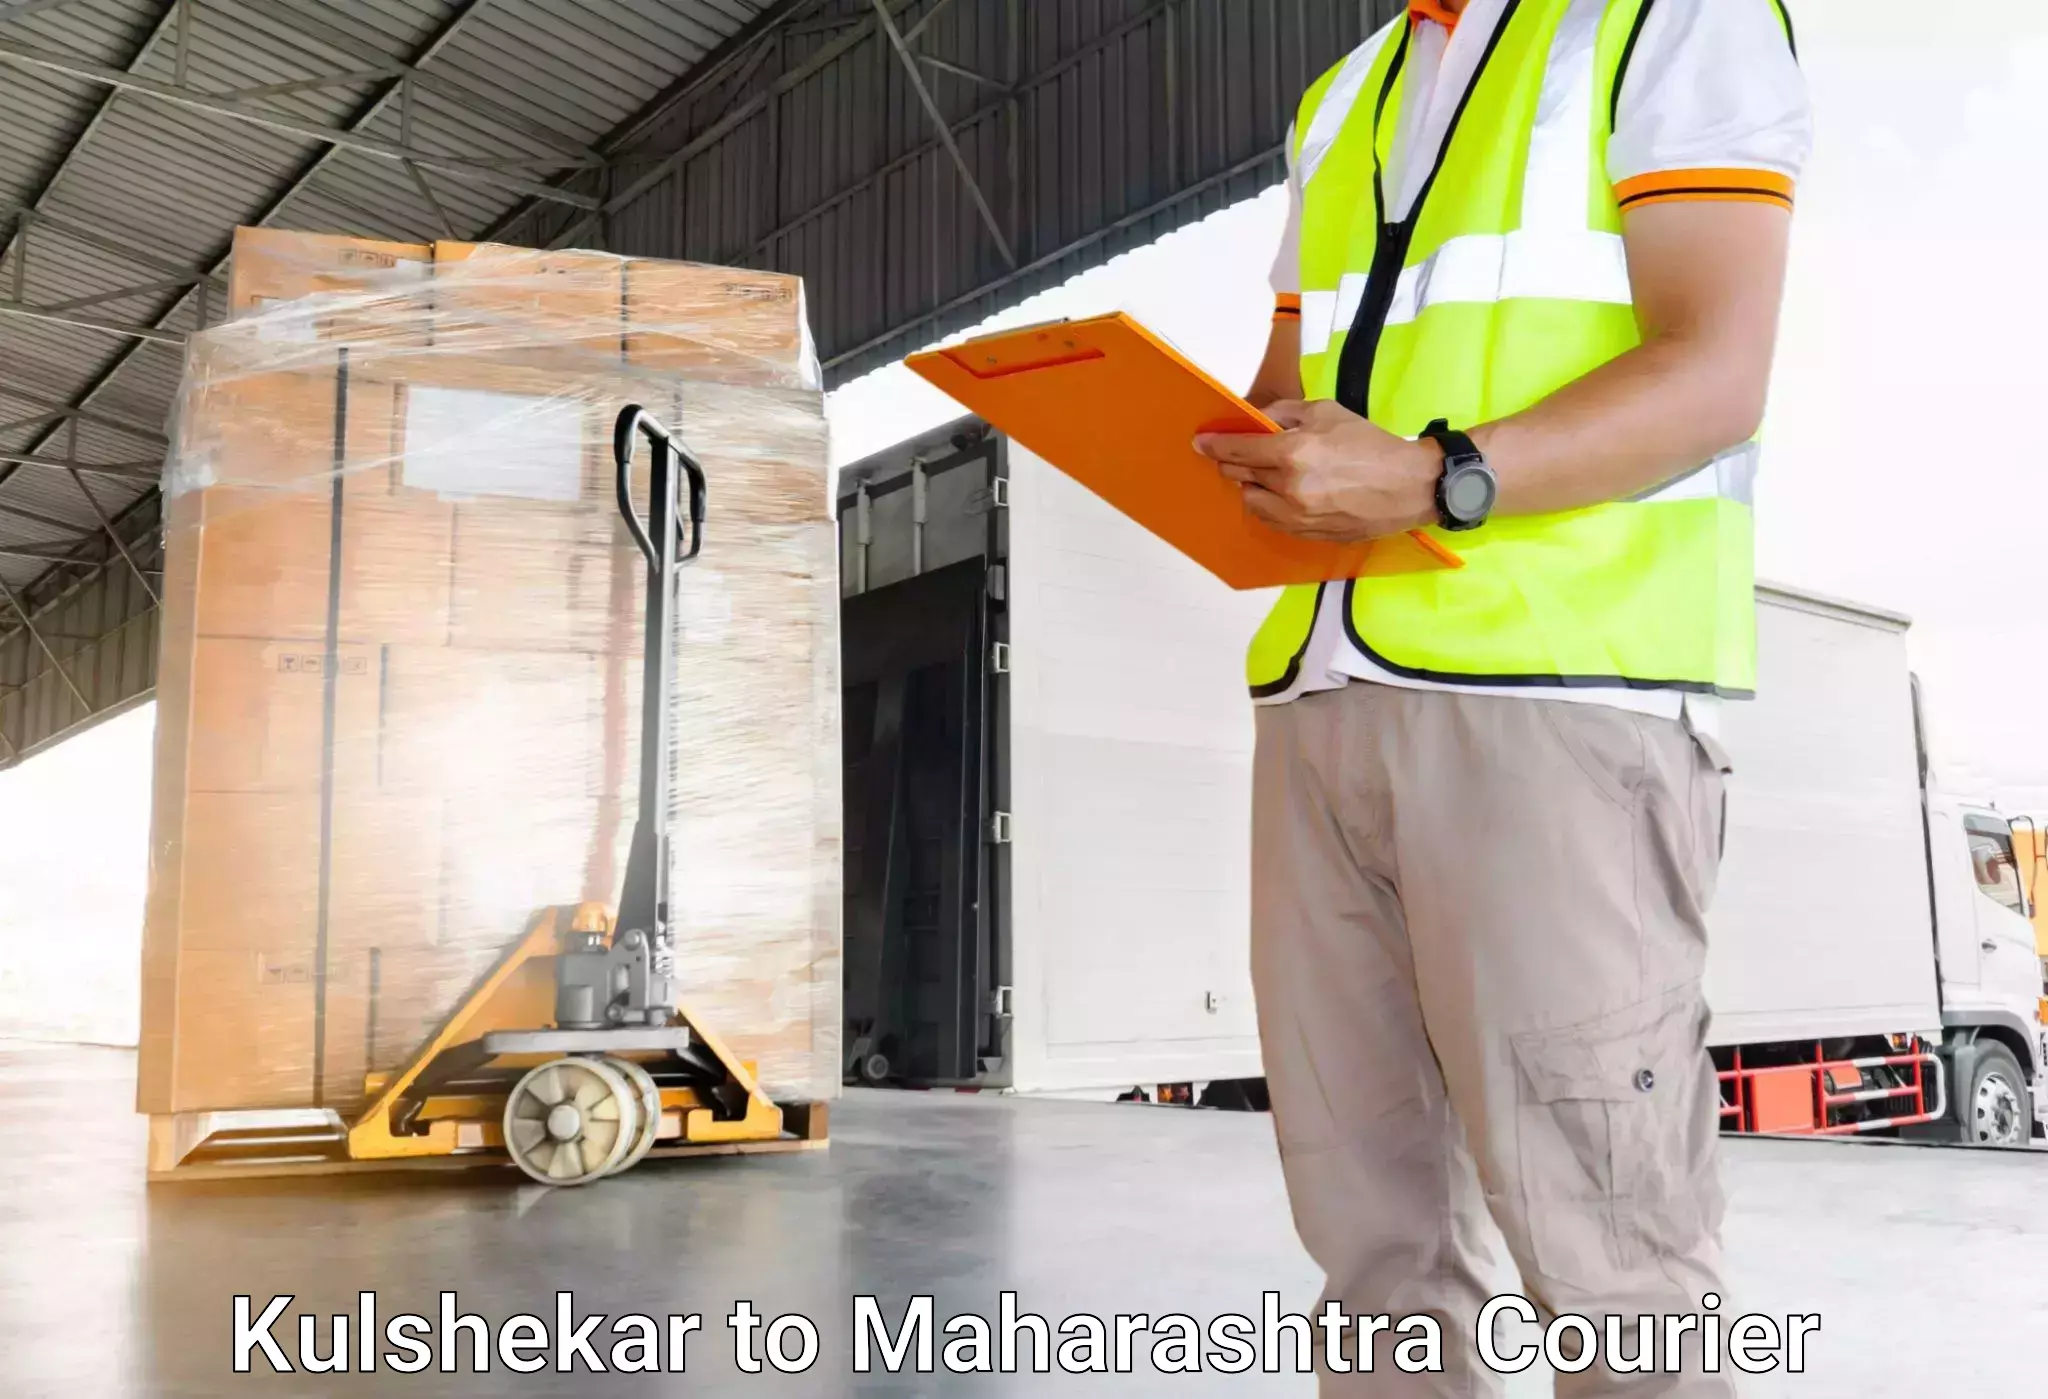 Baggage transport logistics in Kulshekar to IIT Mumbai